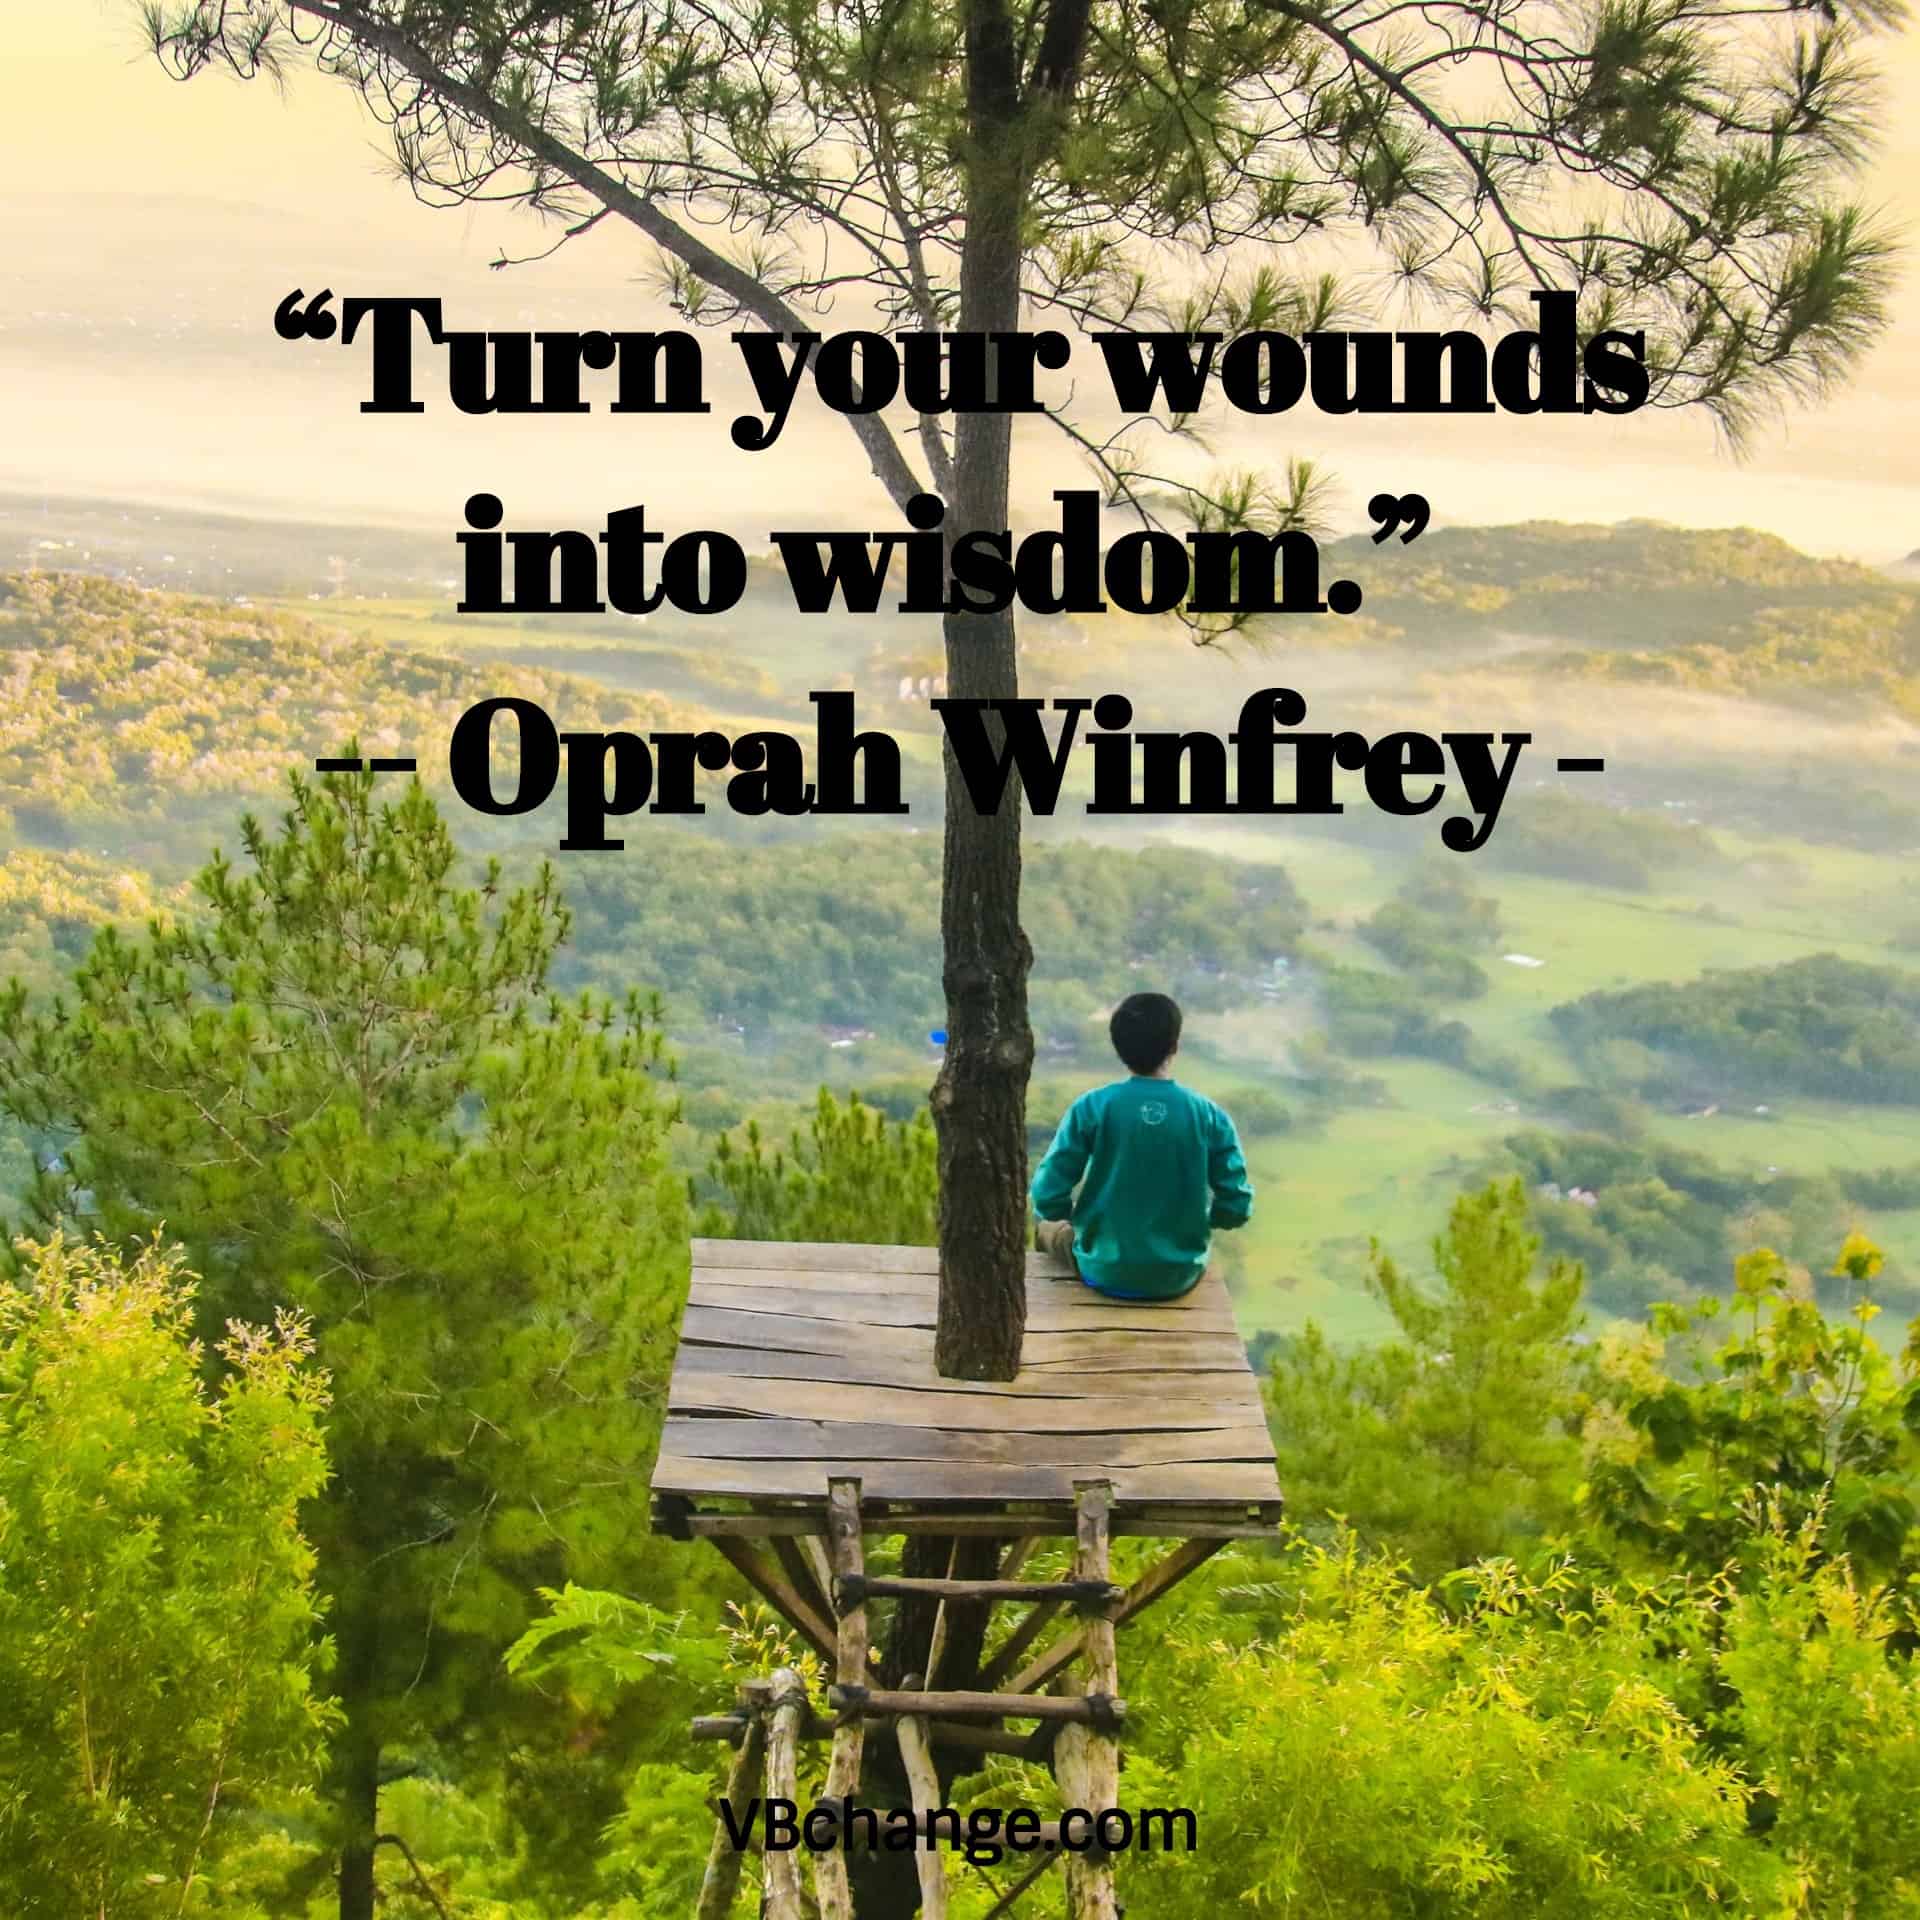 “Turn your wounds into wisdom.” 
- Oprah Winfrey